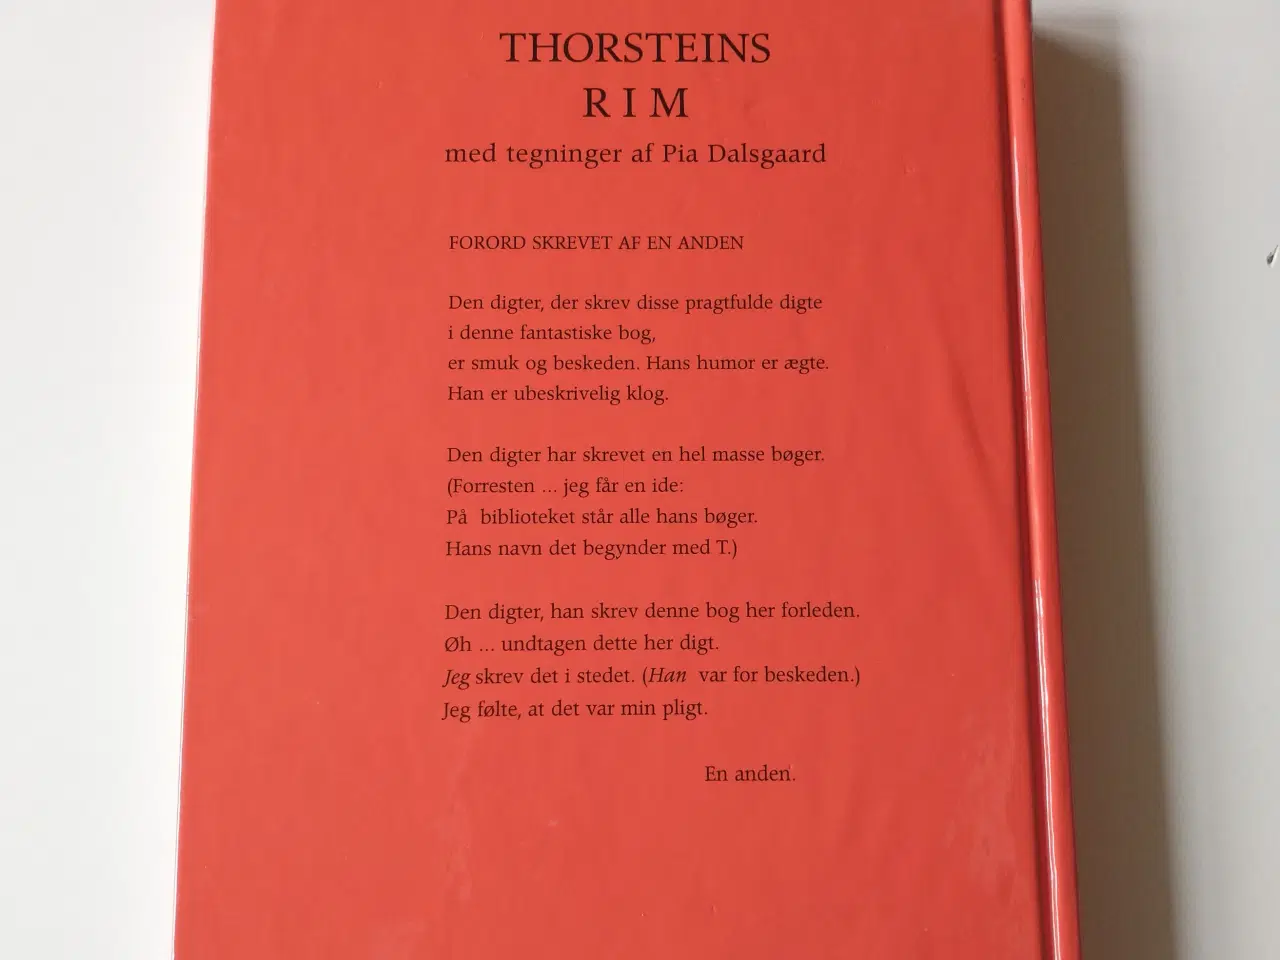 Billede 2 - Thorsteins rim. Af Thorstein Thomsen